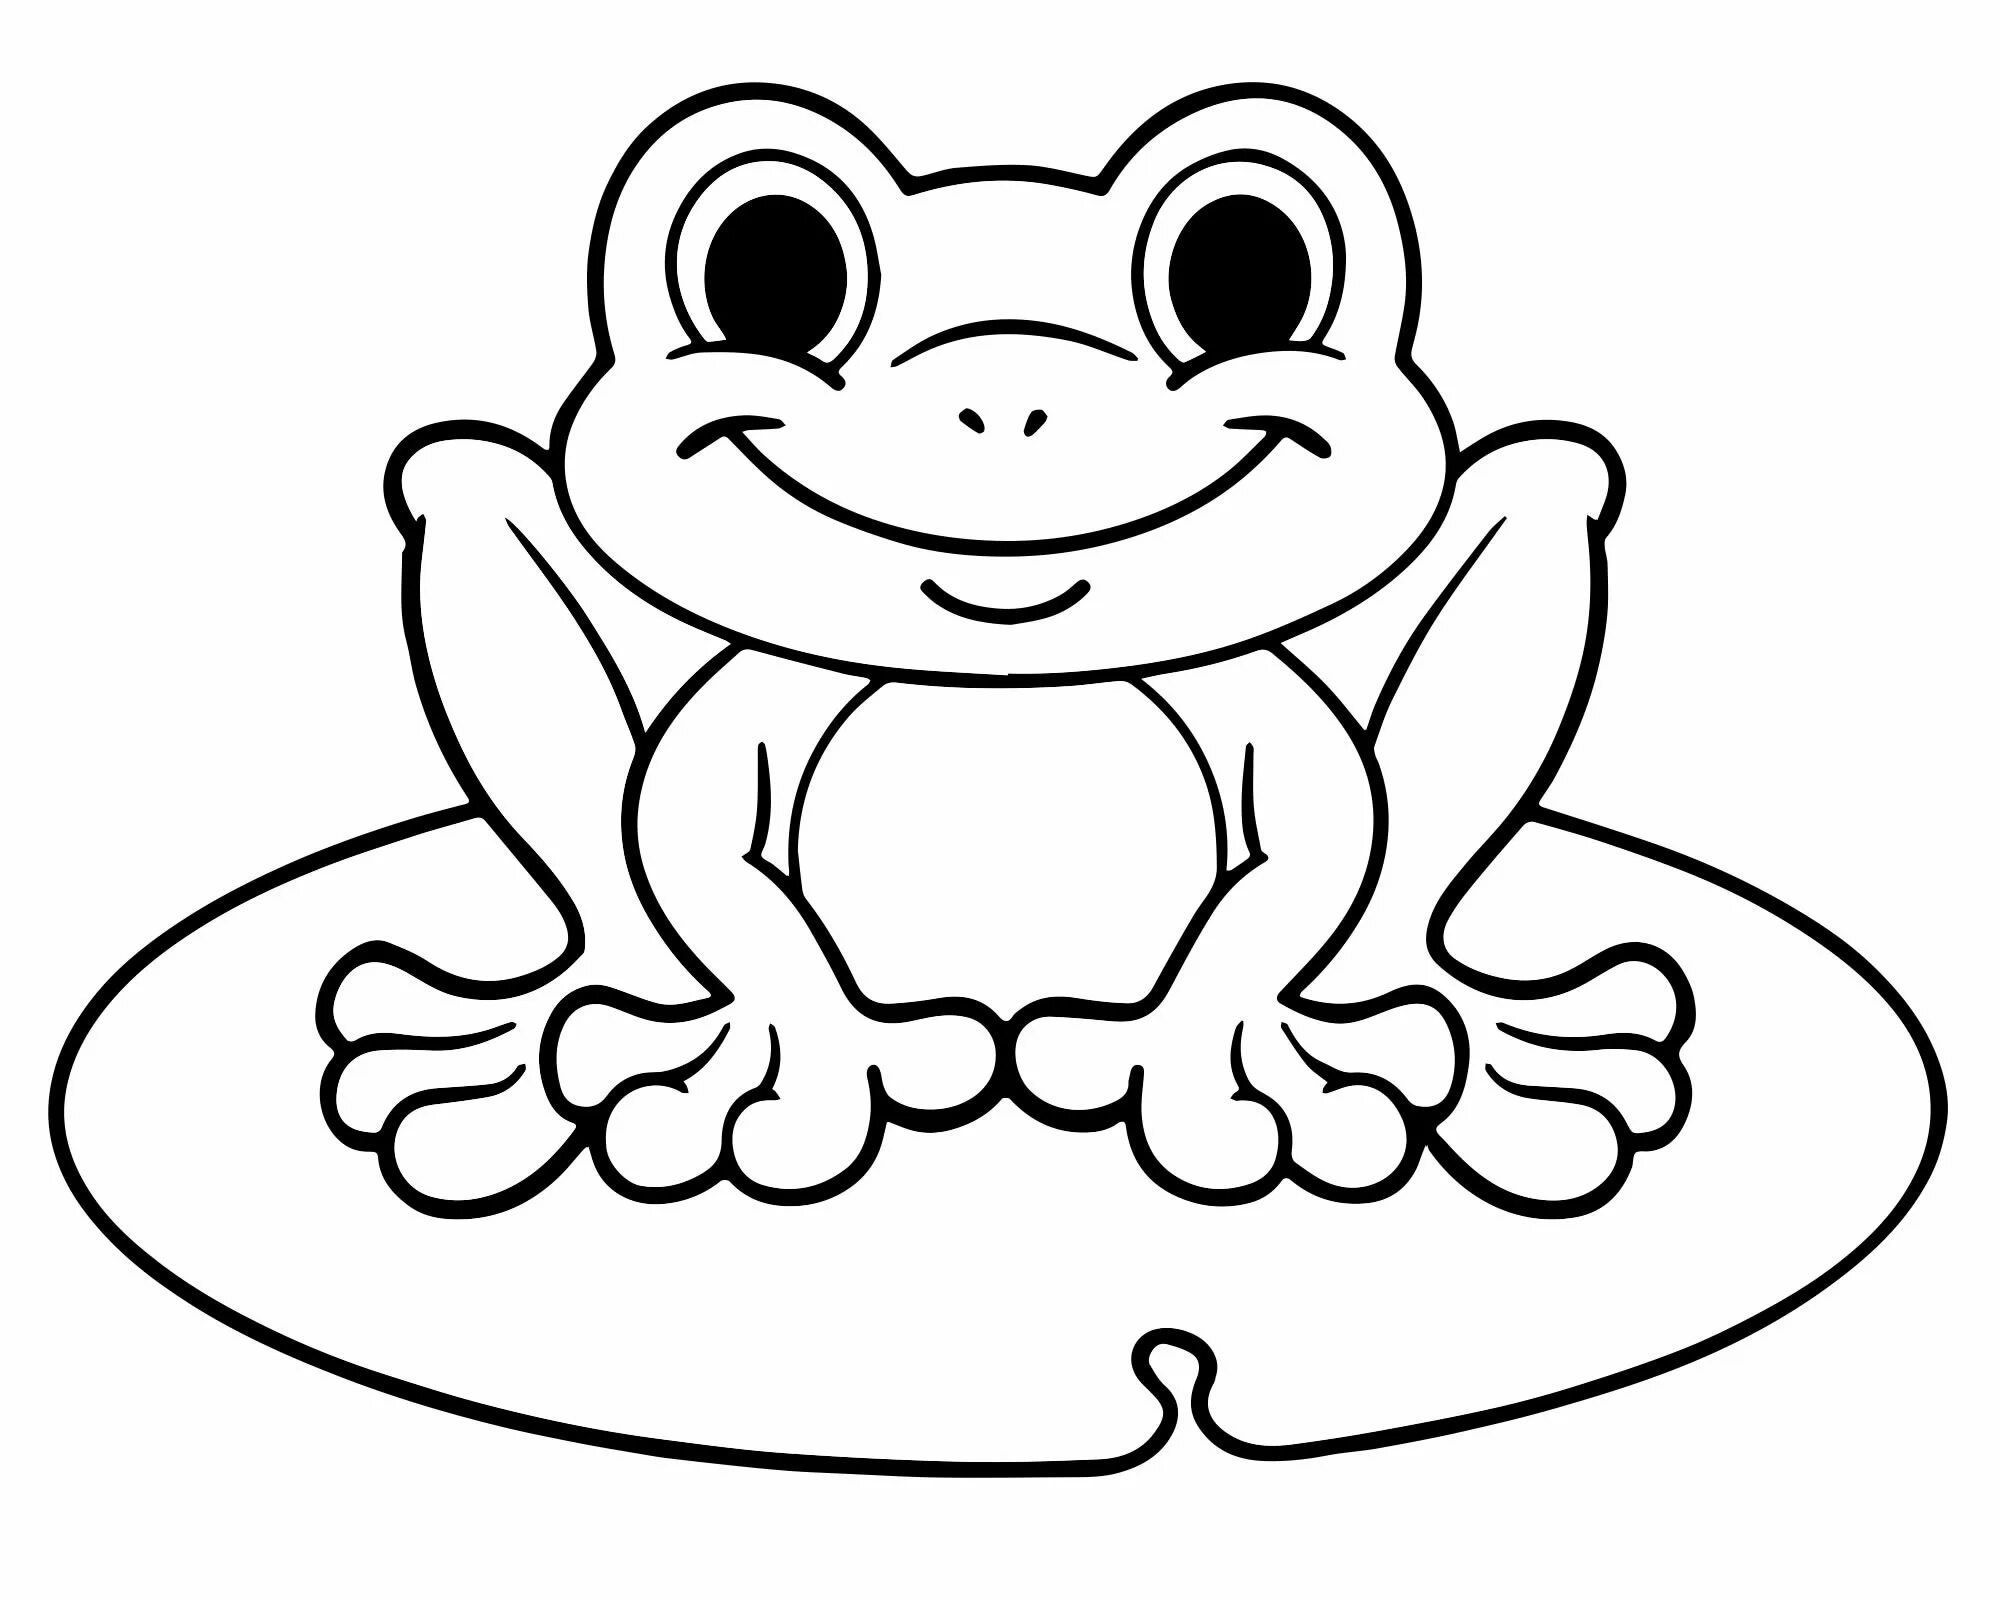 Cartoon frog #1